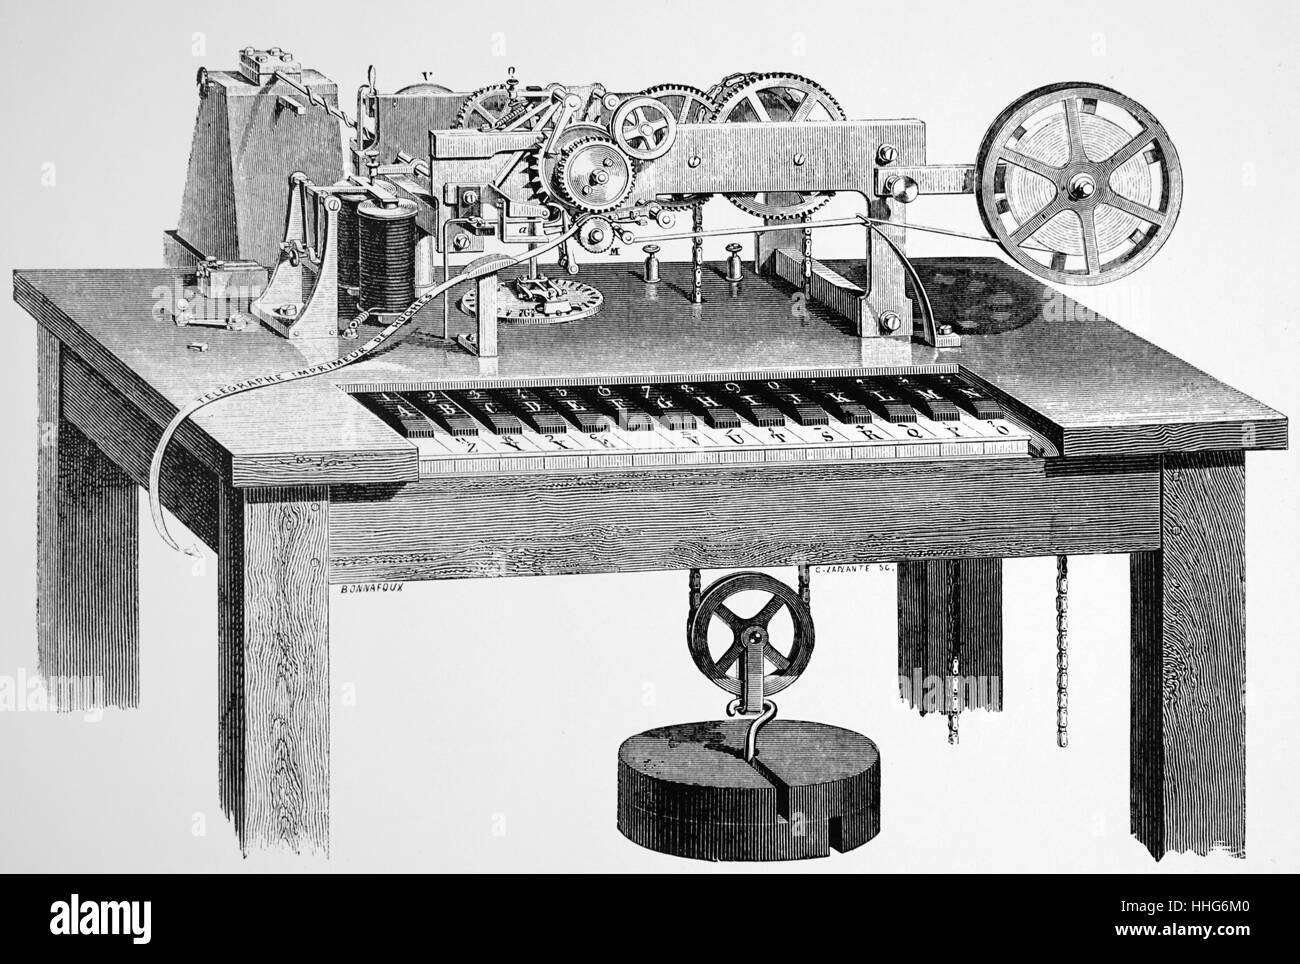 David Hughes printing Telegraph. Dies wurde durch ein Uhrwerk angetrieben, mit einem Gewicht von ca. 50 kg. David Hughes wurde die britisch-amerikanische Erfinder, praktische Experimenter, und Professor für Musik bekannt für seine Arbeit auf dem Drucksystem Telegraph. Stockfoto